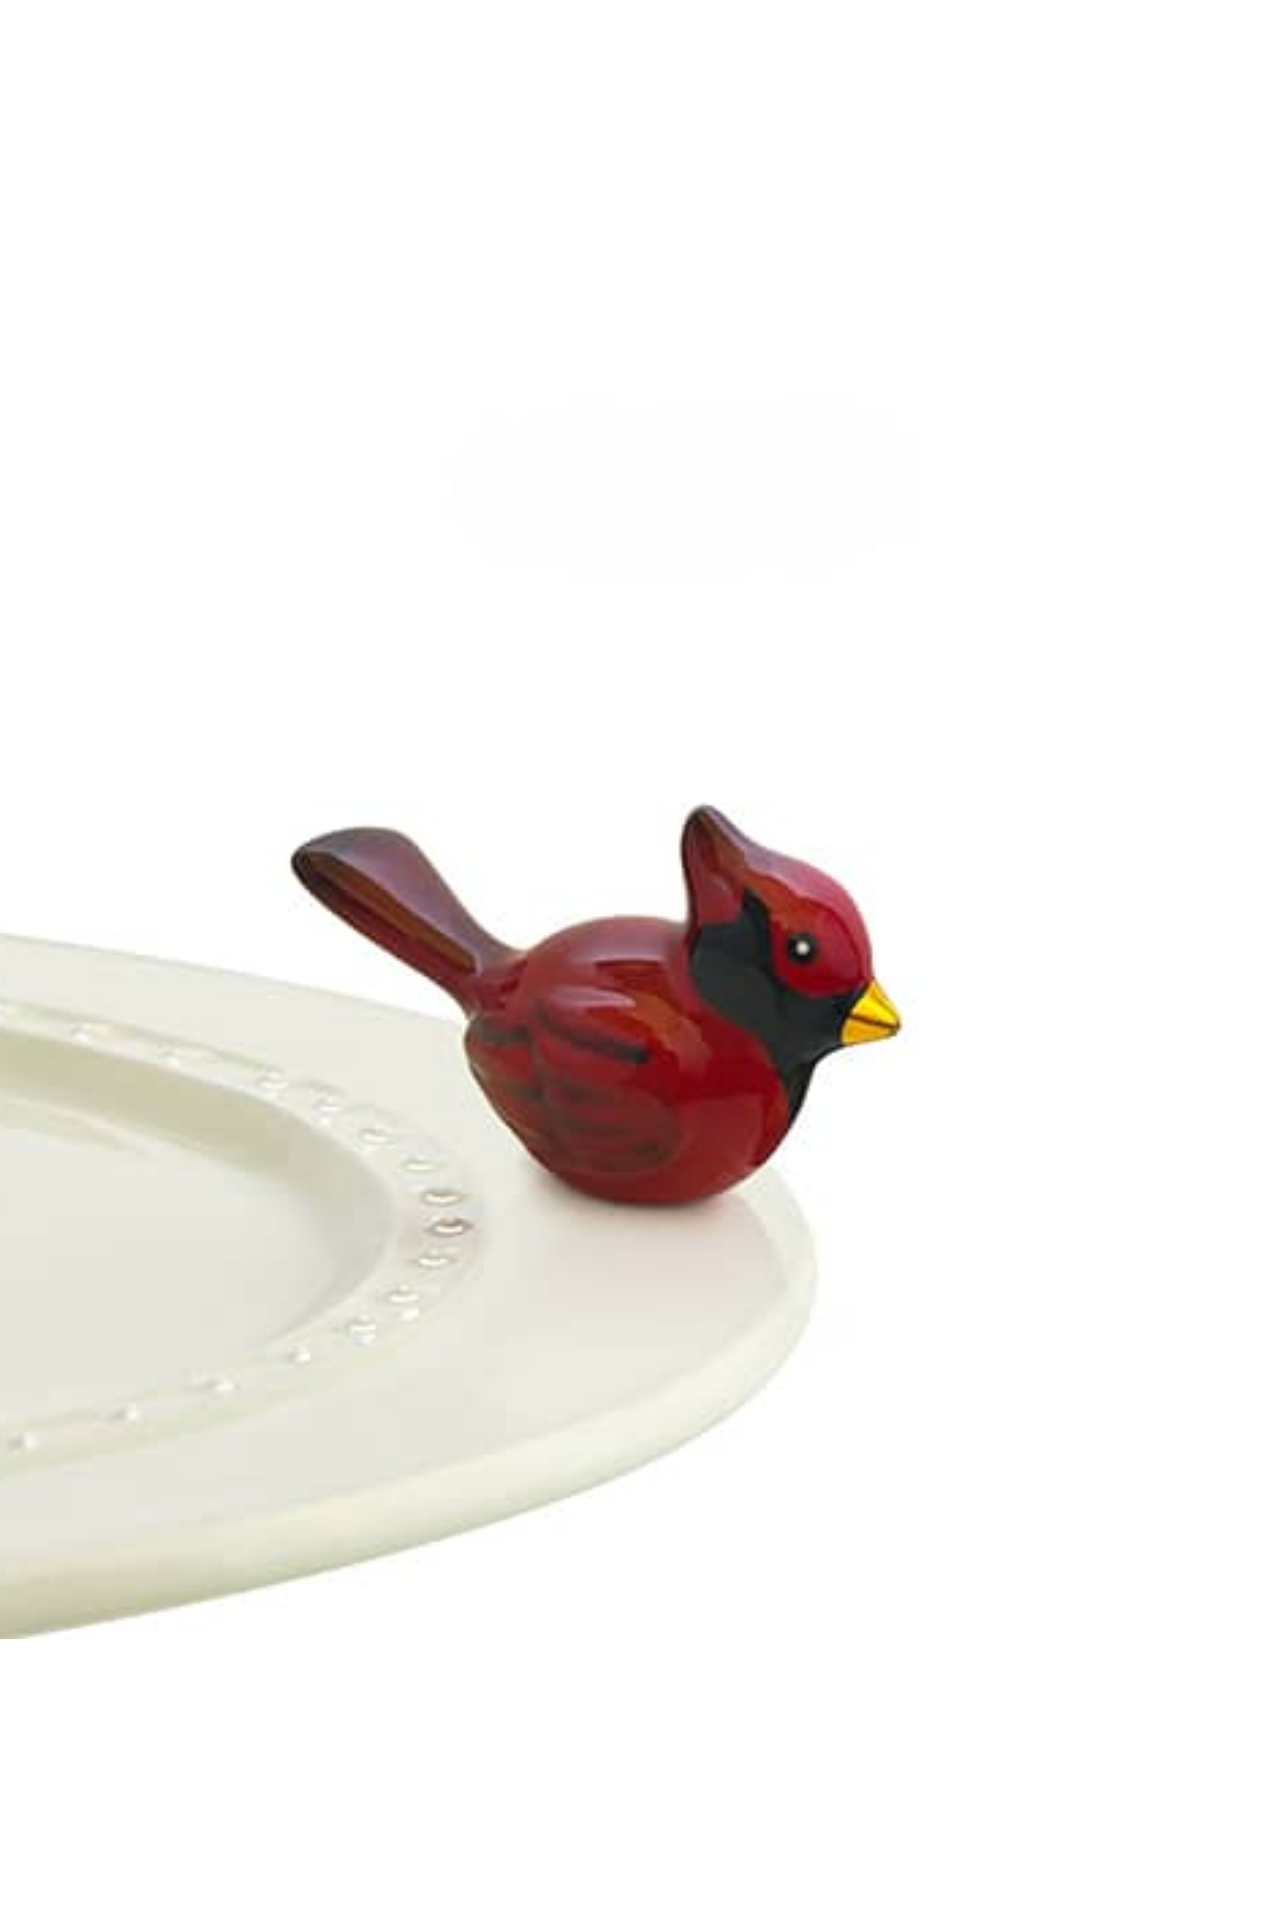 winter songbird (red cardinal) A204